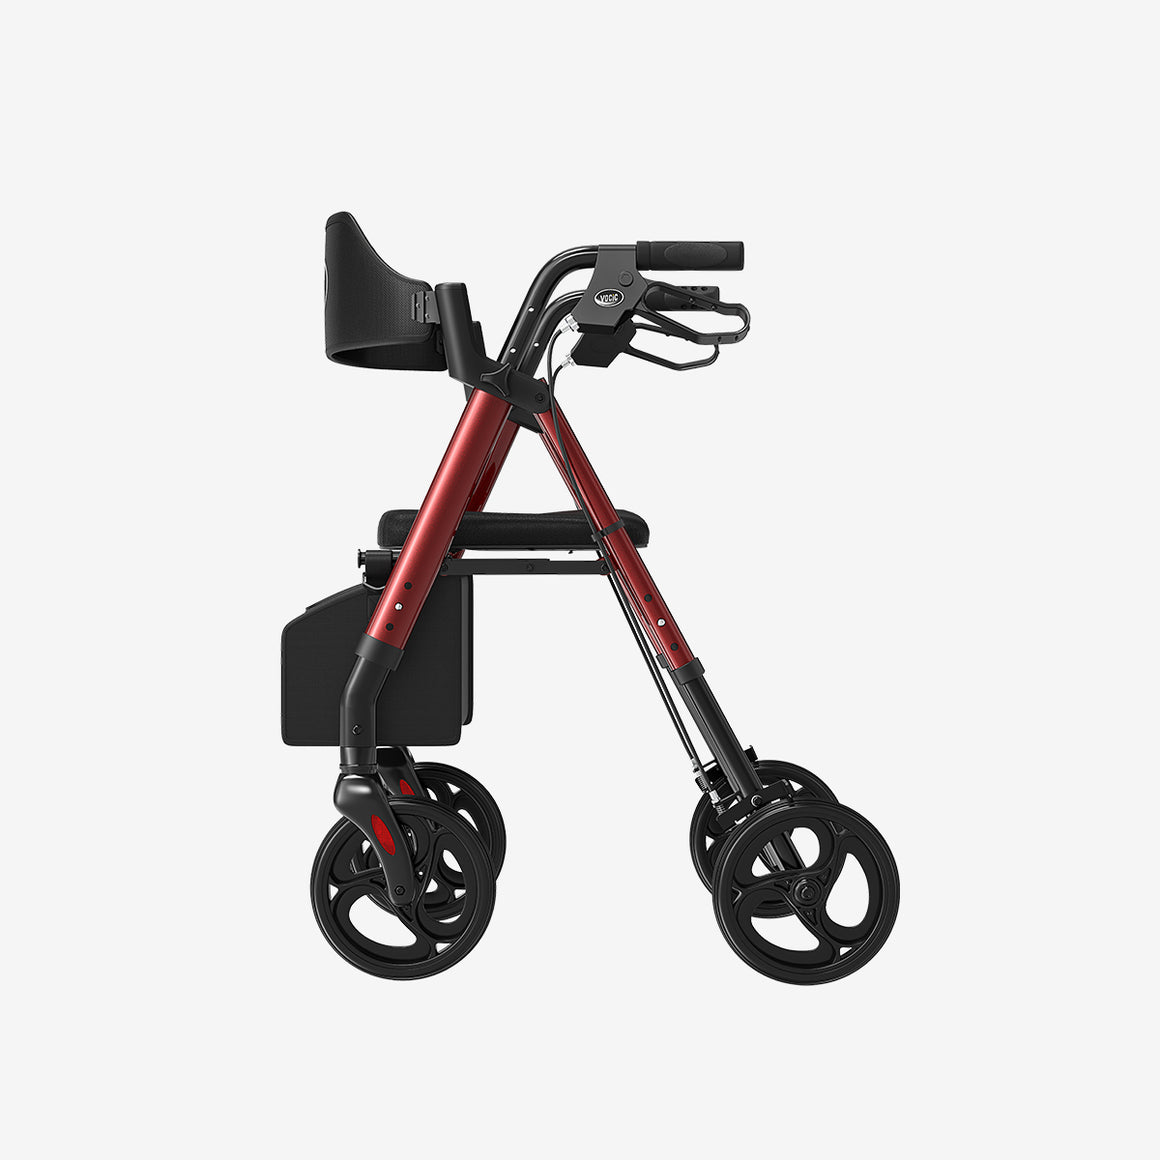 Z21 steel&aluminum combined ergonomic foldable 4-wheels rollator walker